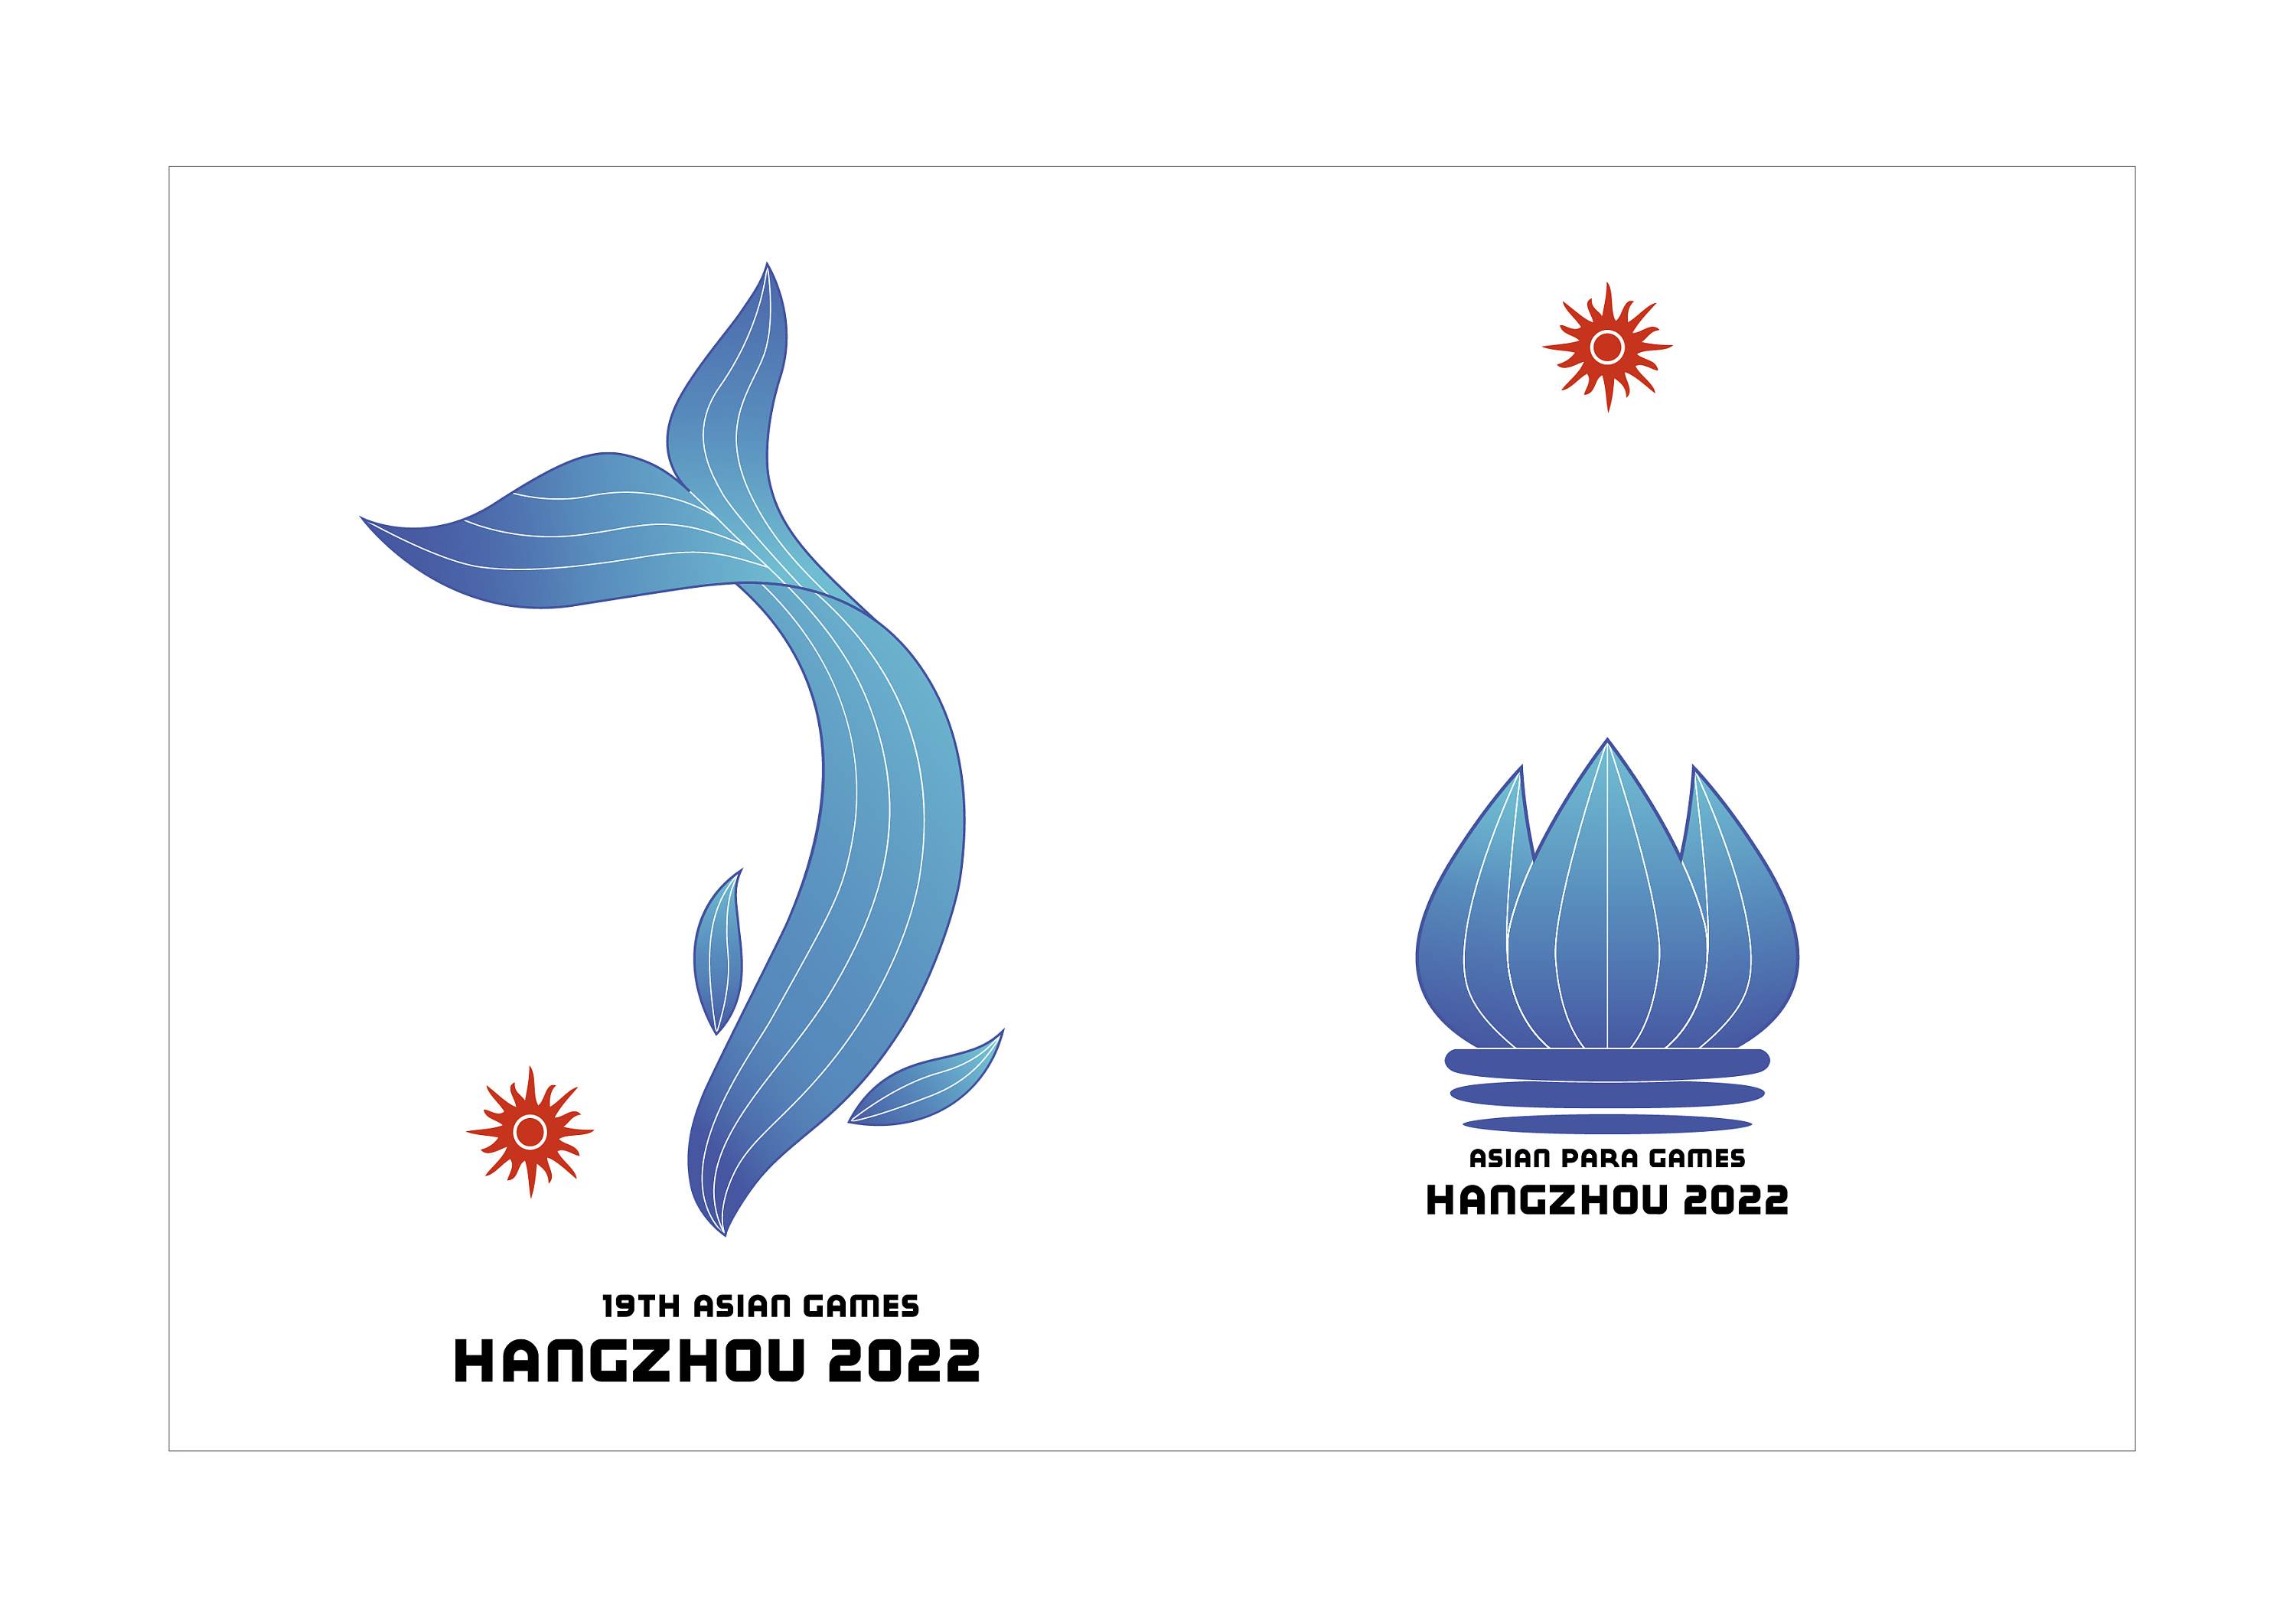 亚运会会徽设计简笔画图片